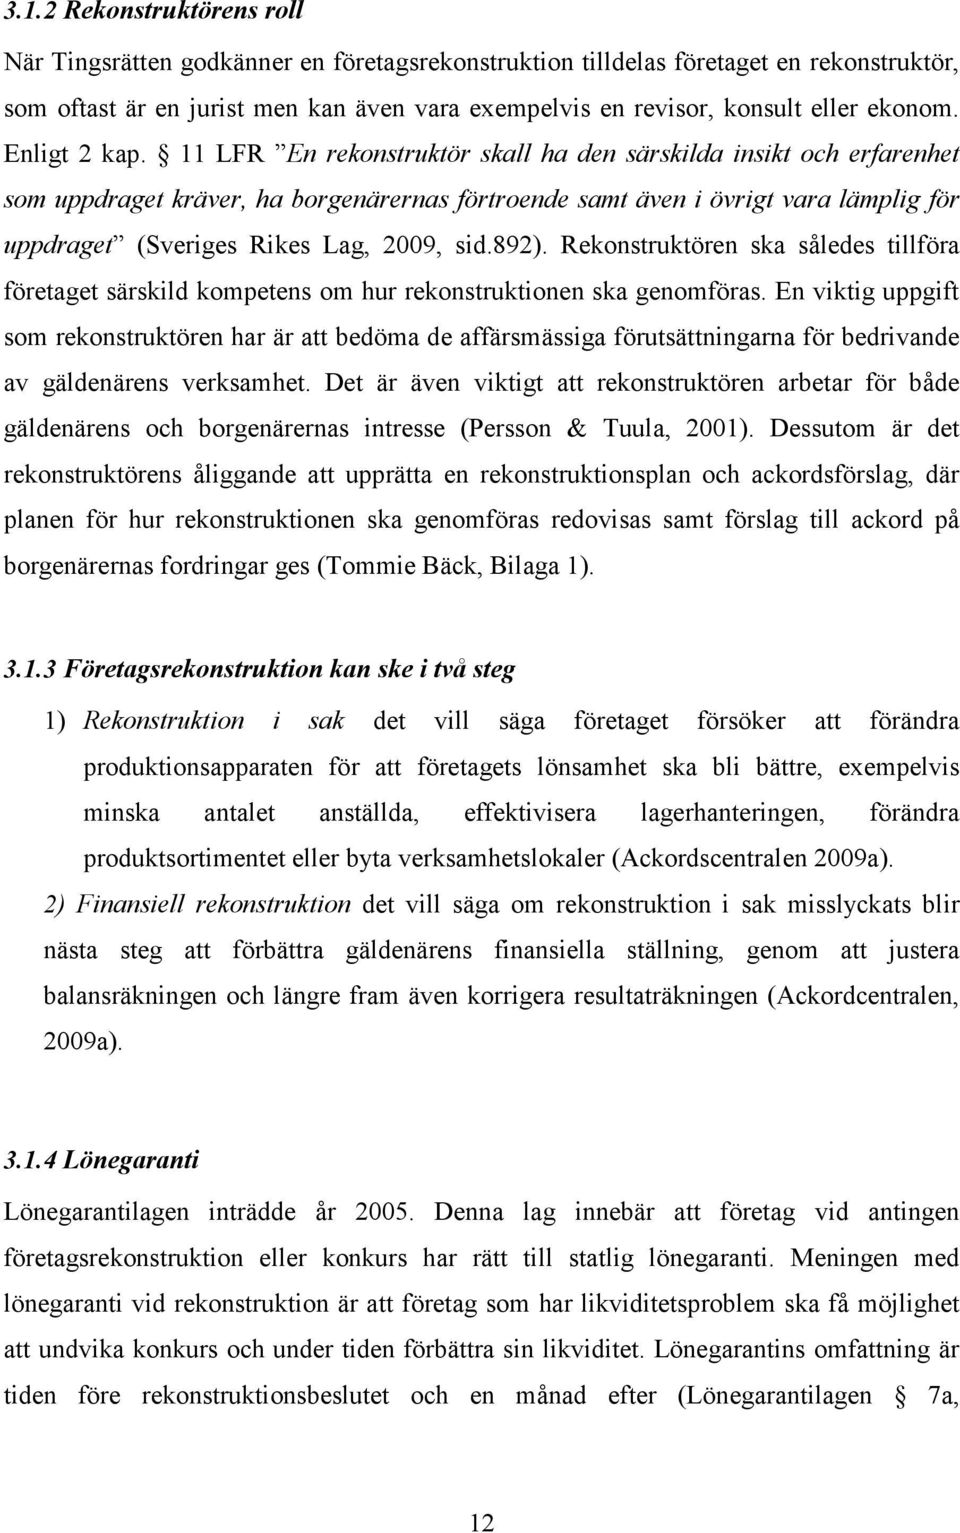 11 LFR En rekonstruktör skall ha den särskilda insikt och erfarenhet som uppdraget kräver, ha borgenärernas förtroende samt även i övrigt vara lämplig för uppdraget (Sveriges Rikes Lag, 2009, sid.